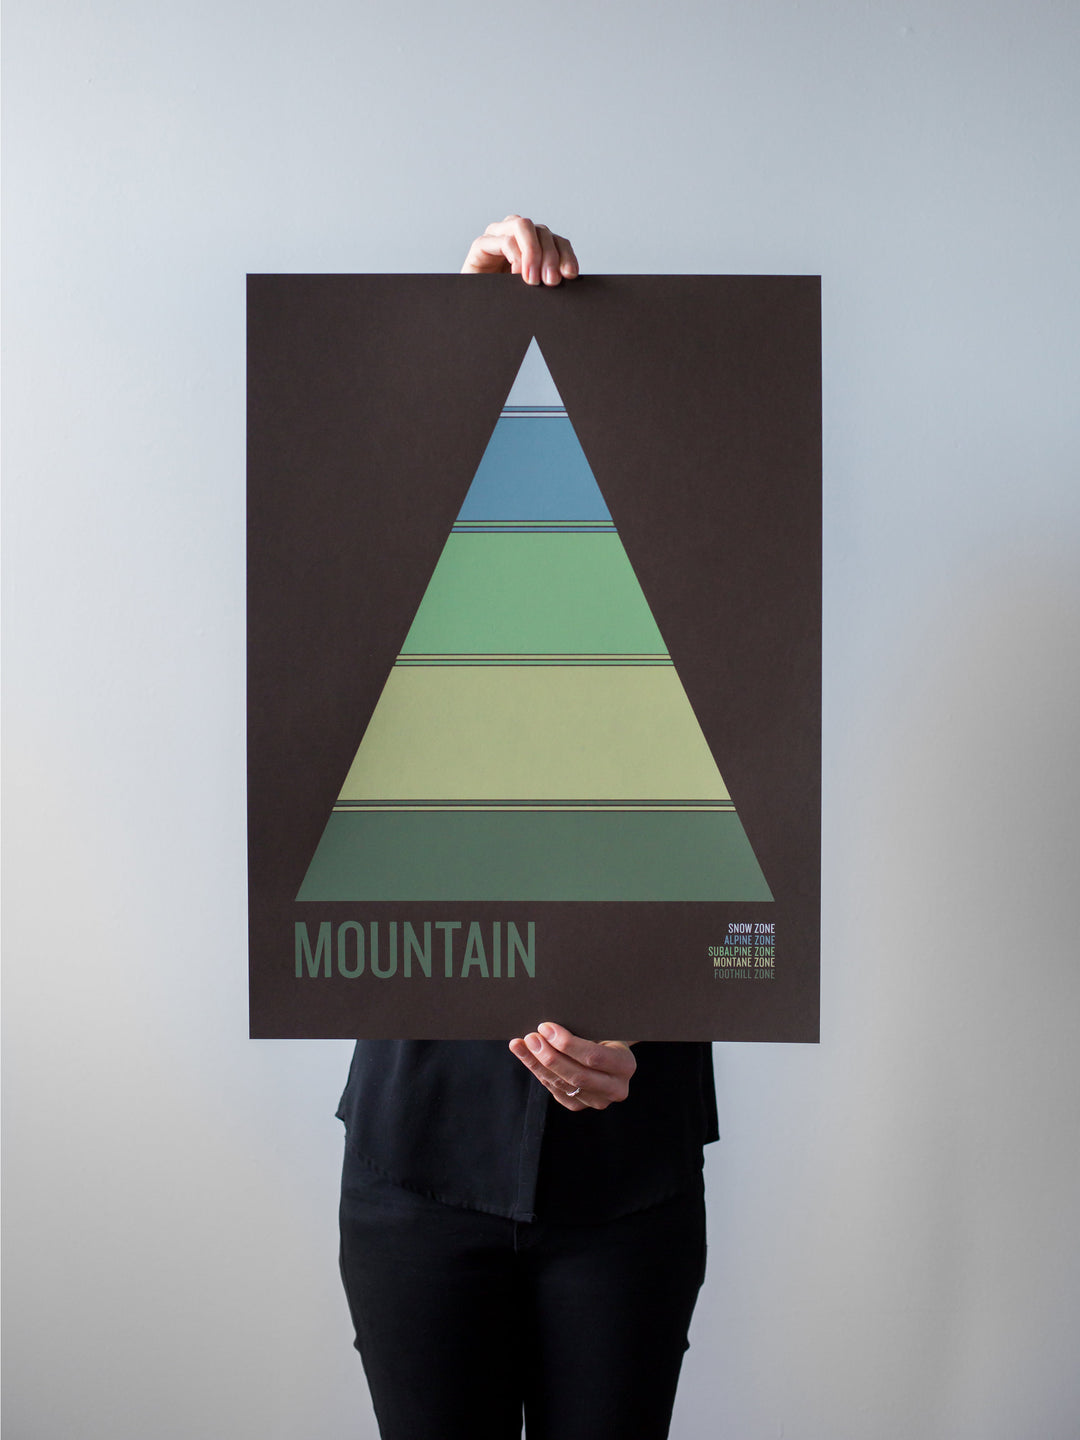 Mountain Print by Brainstorm - Snow Zone, Alpine Zone, Subalpine Zone, Montane Zone, Foothill Zone